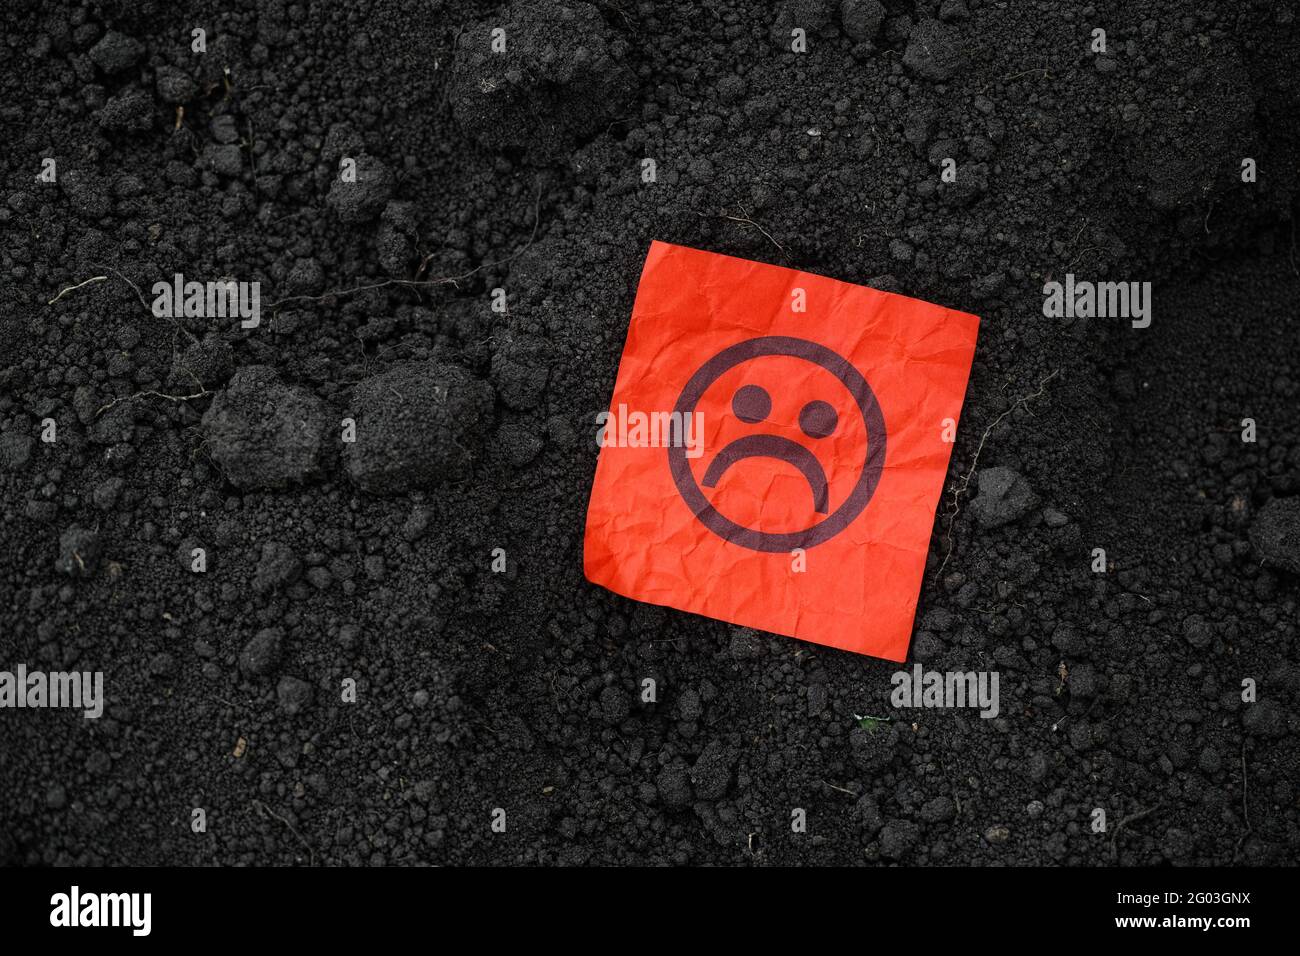 Eine rote Papiernote mit einem traurigen Gesicht auf dem Boden. Nahaufnahme. Stockfoto